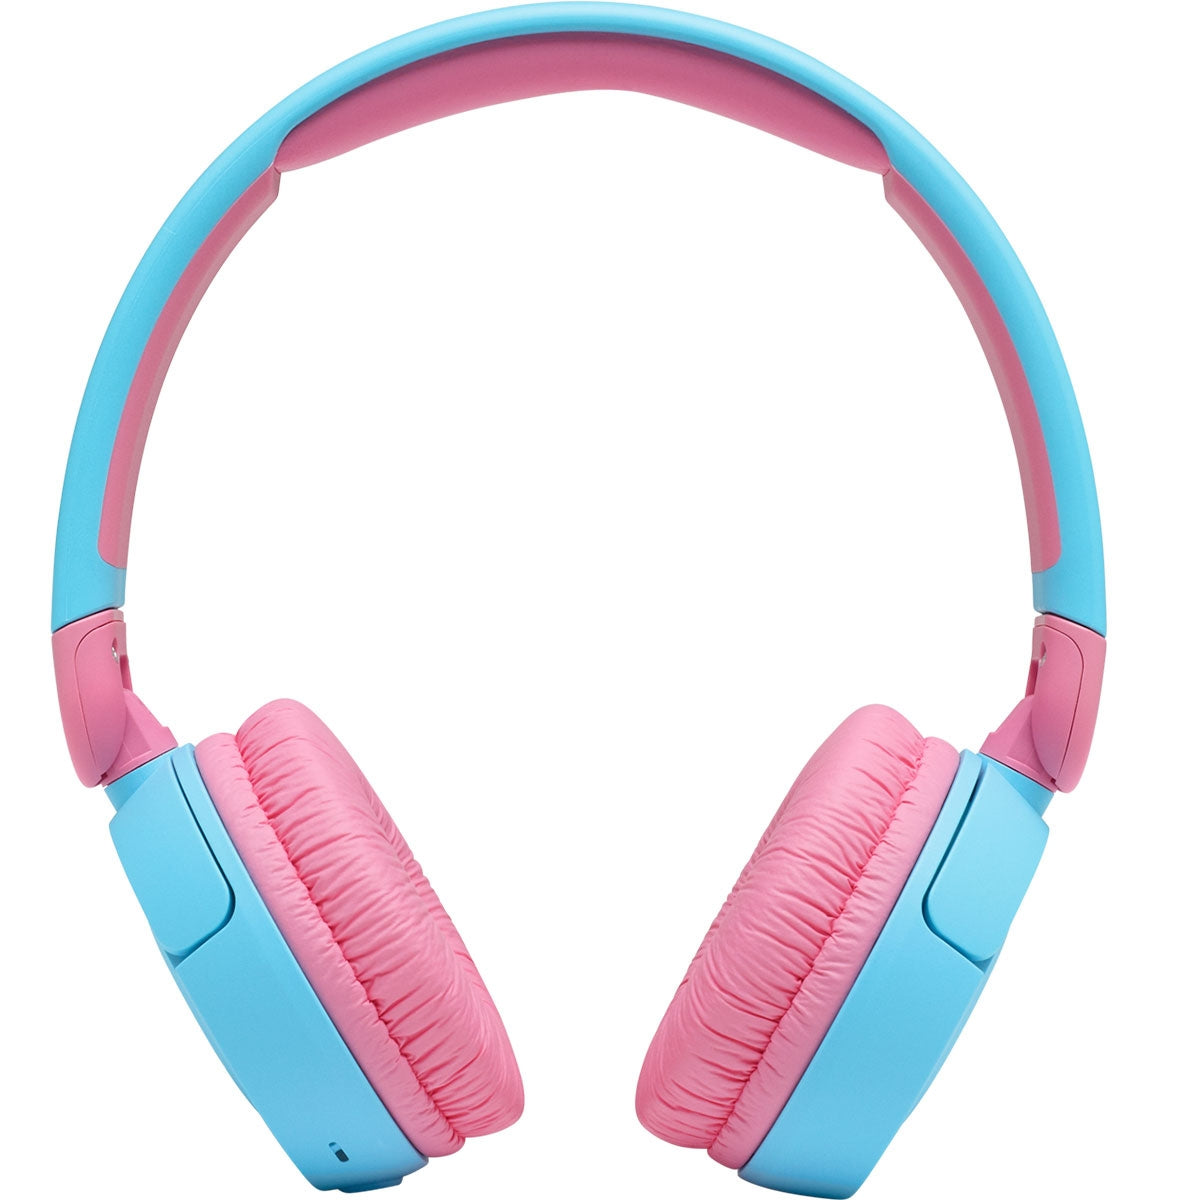 אוזניות on ear לילדים JBL JR310BT כחול